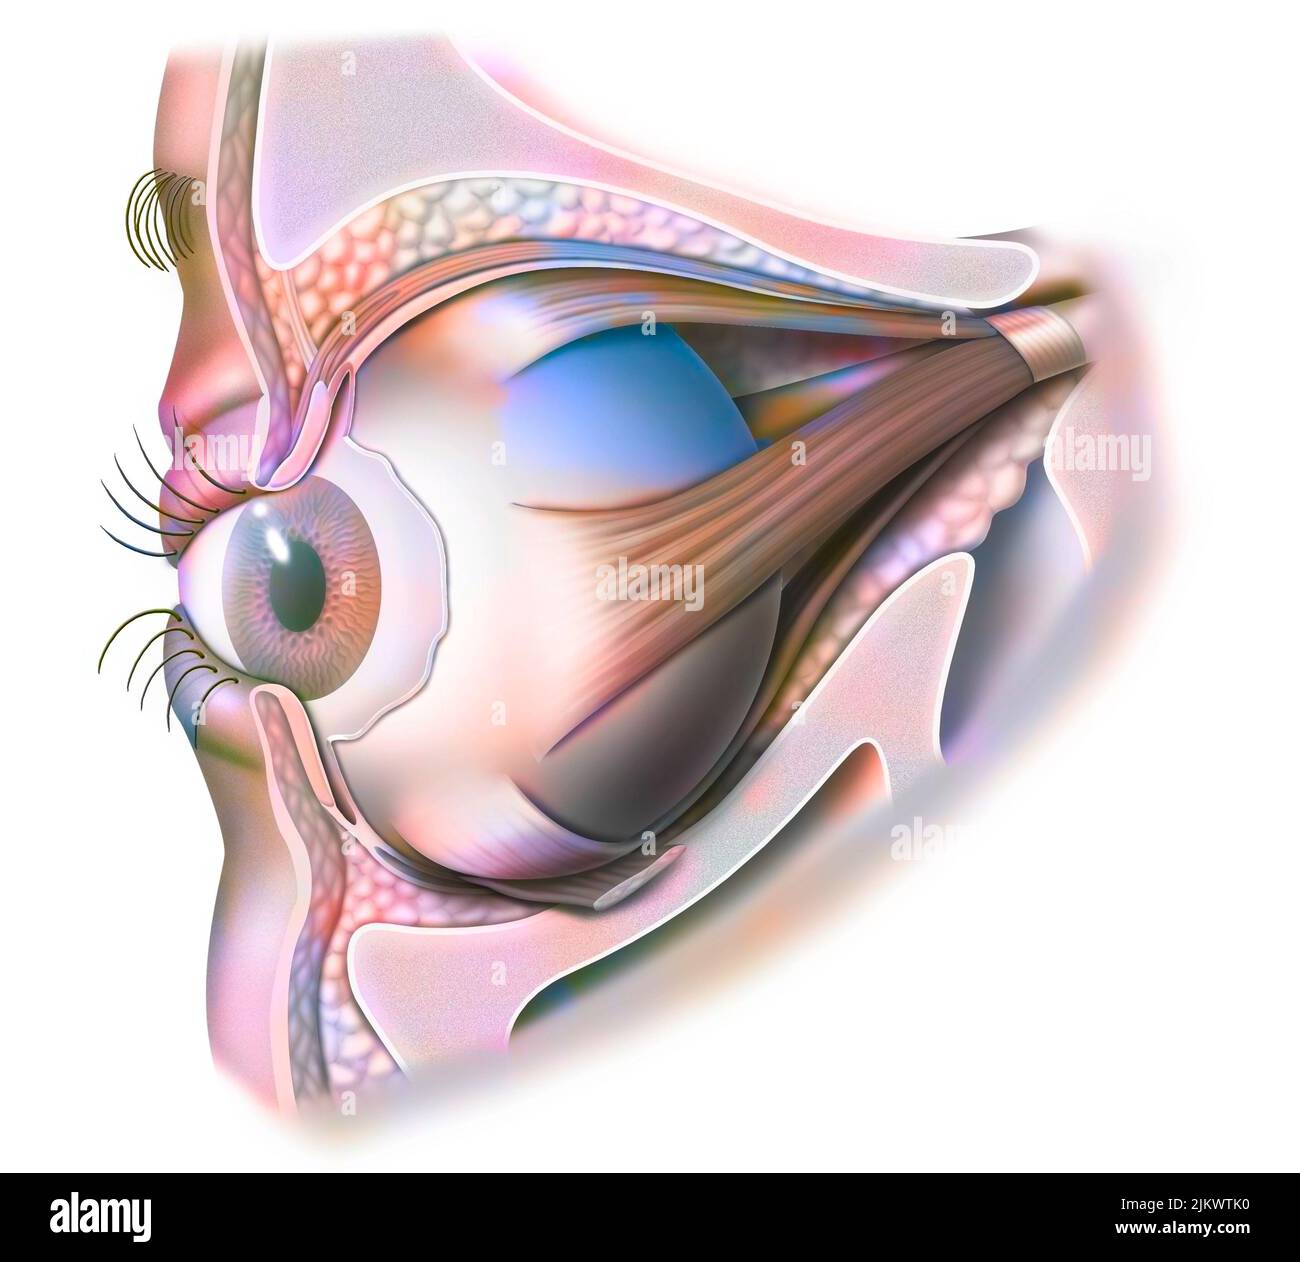 Anatomía del ojo y párpado (visto desde 3/4) con iris, pupila. Foto de stock